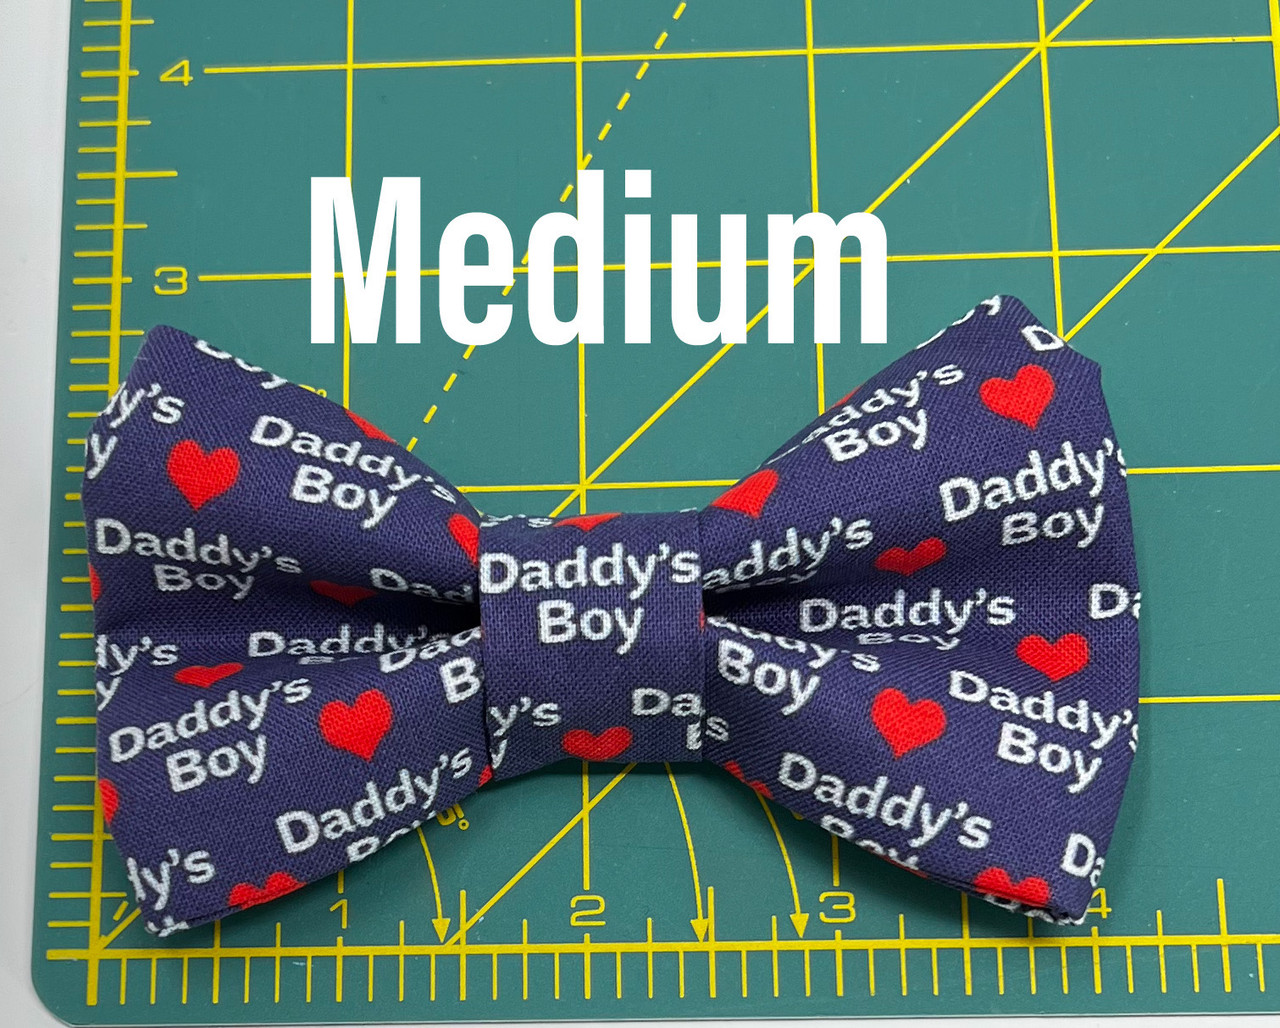 Daddy’s Boy Bow Tie